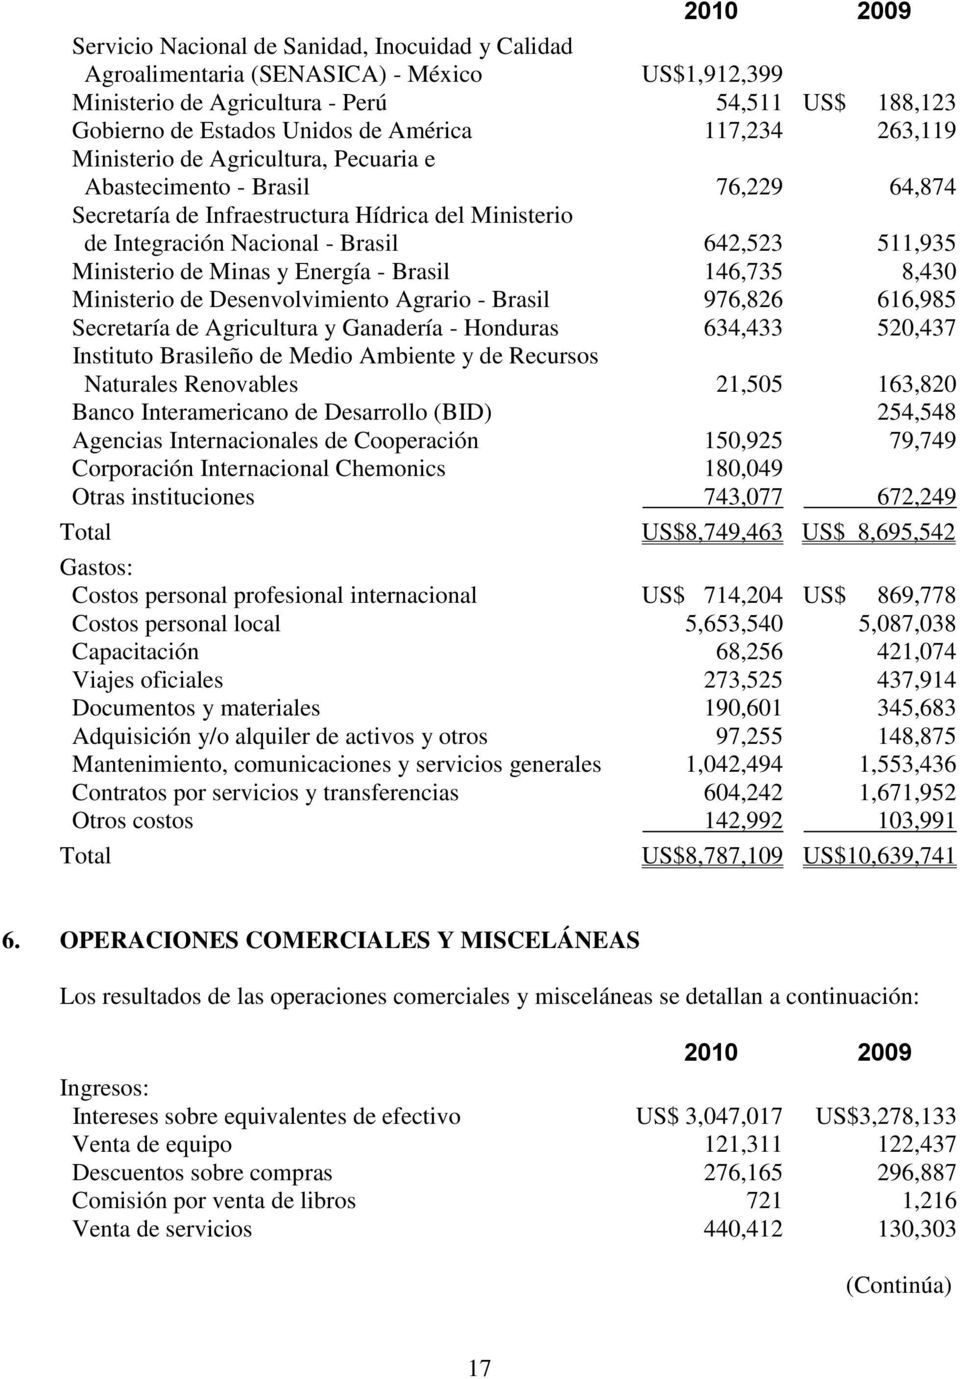 Ministerio de Minas y Energía - Brasil 146,735 8,430 Ministerio de Desenvolvimiento Agrario - Brasil 976,826 616,985 Secretaría de Agricultura y Ganadería - Honduras 634,433 520,437 Instituto